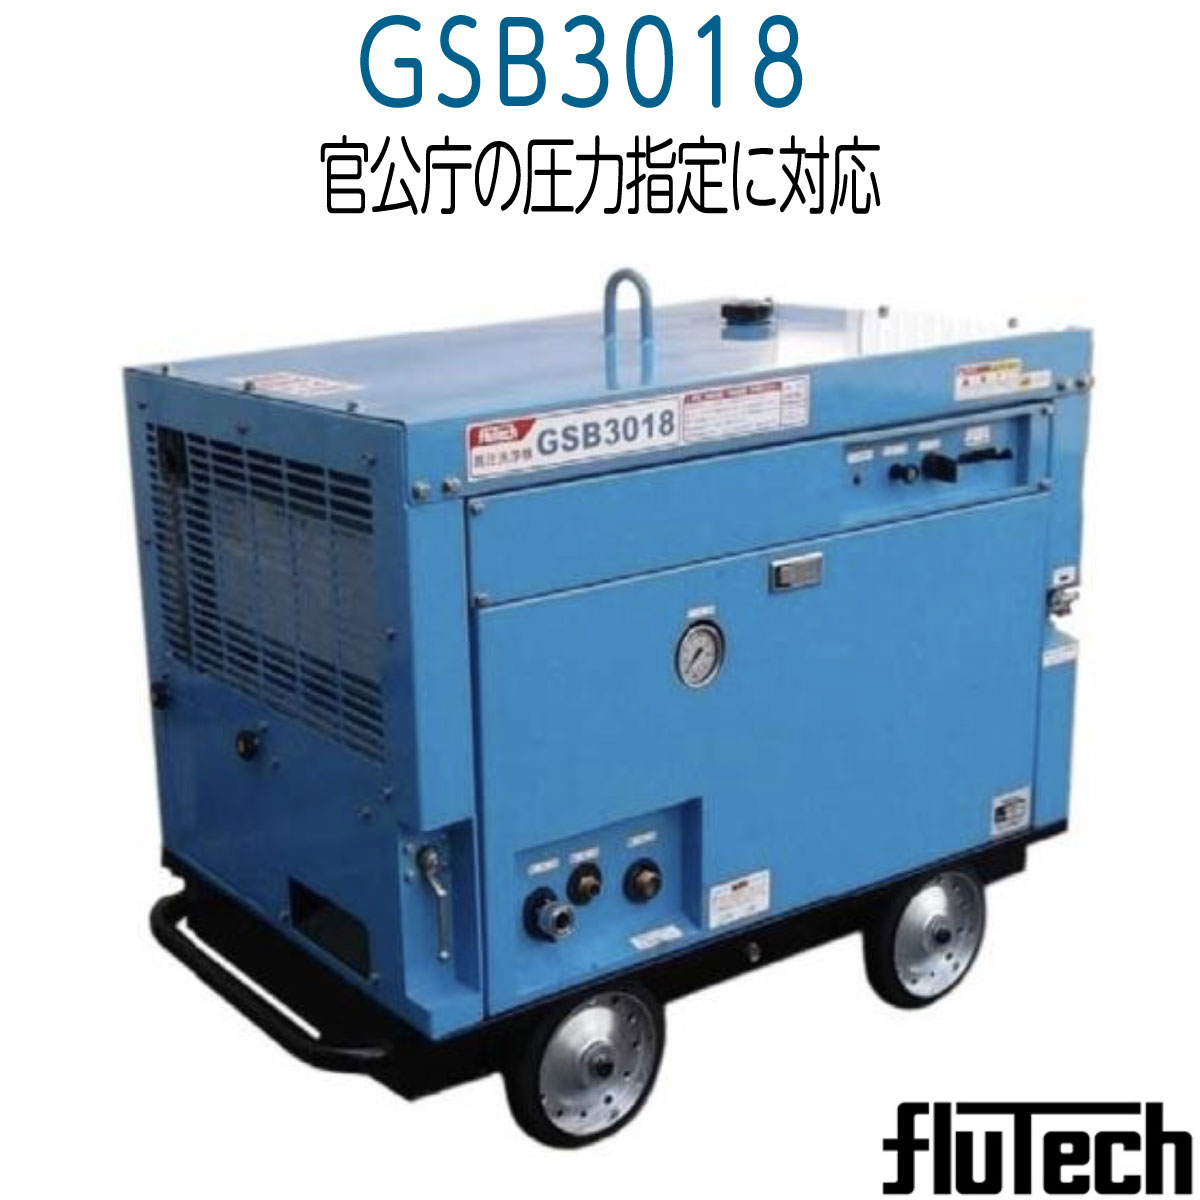 上品】【上品】フルテック GSB3018 簡易防音型高圧洗浄機 セット品《メーカー直送品》 電動工具本体